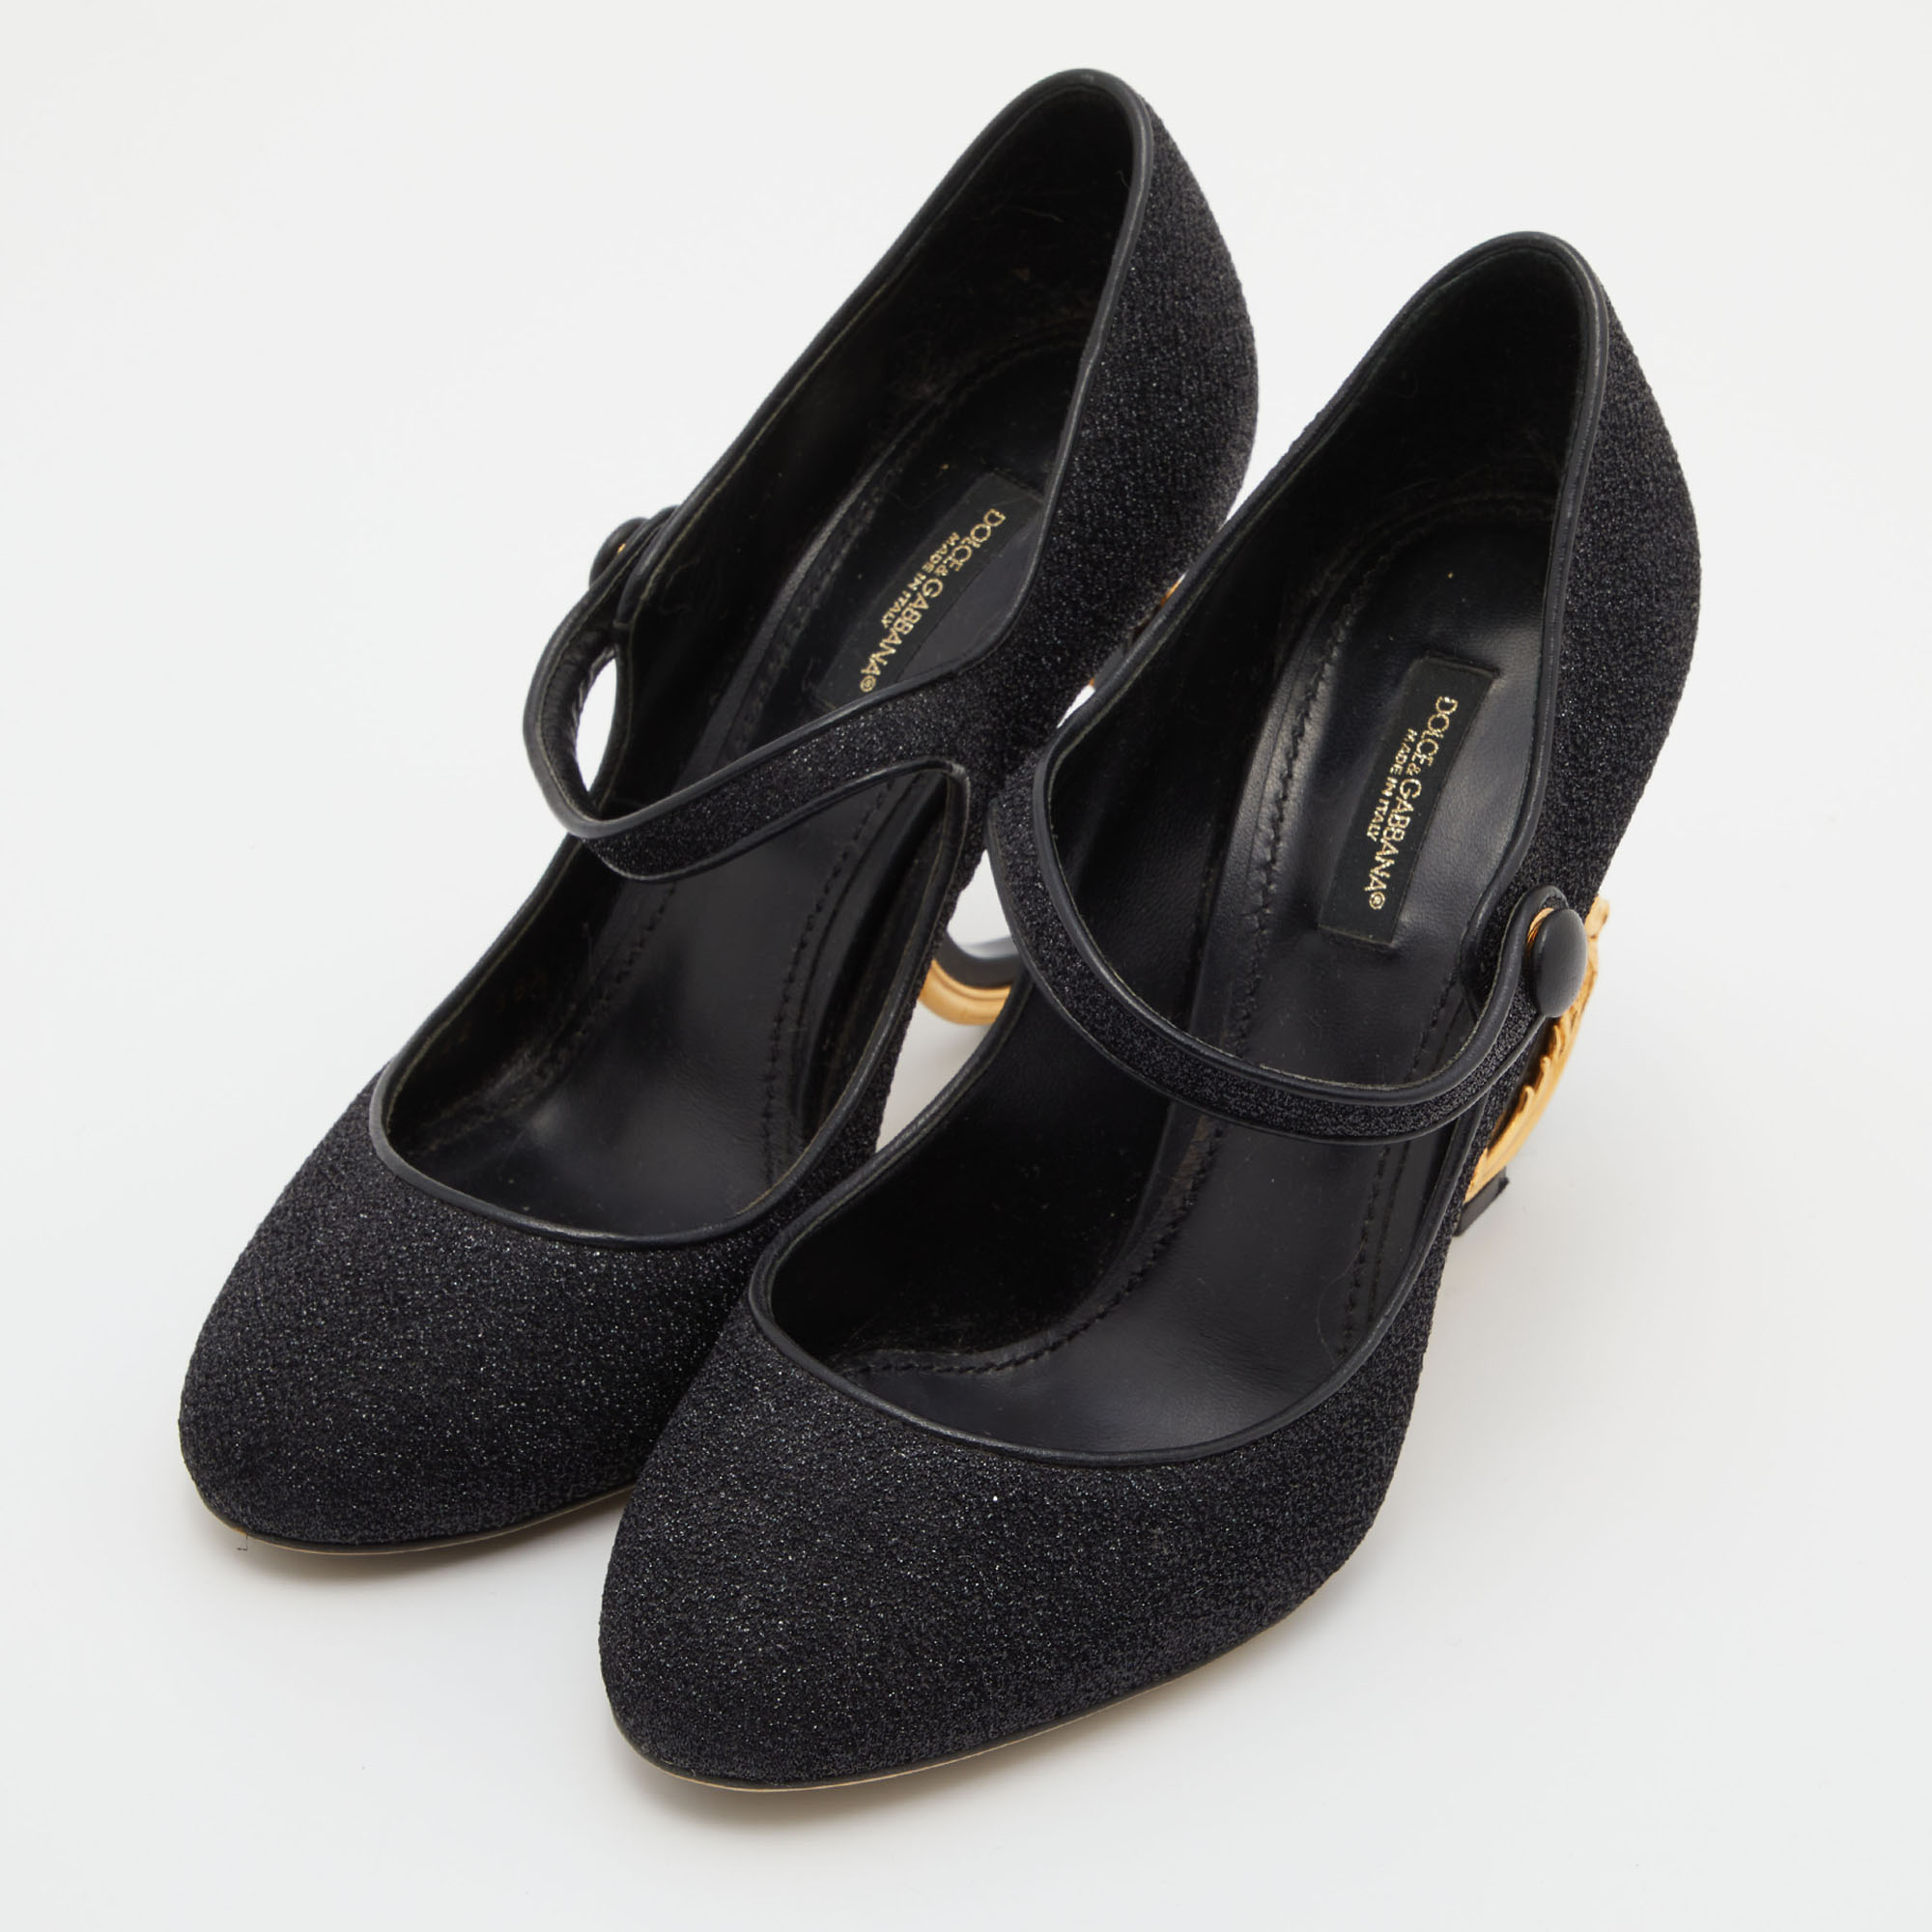 

Dolce & Gabbana Black Lurex Fabric DG Baroque Heel Pumps Size